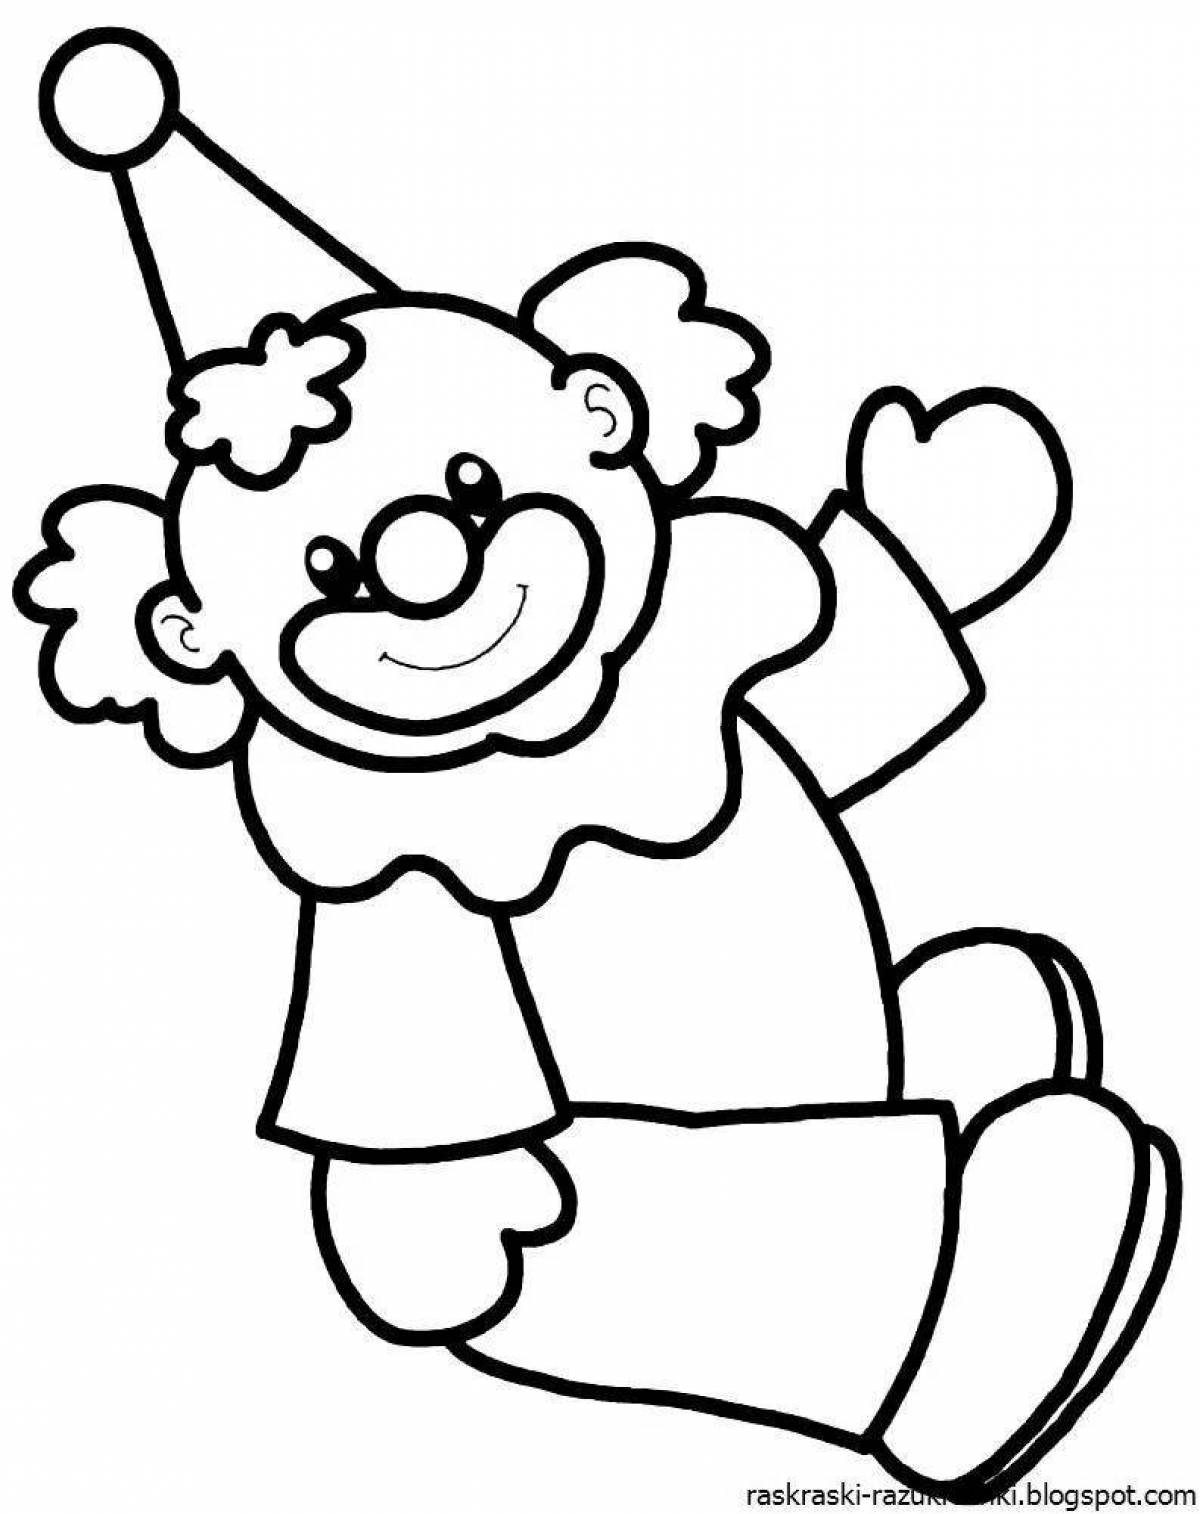 Клоун раскраска для детей 4 5. Клоун раскраска. Клоун для раскрашивания детям. Клоун раскраска для детей. Клоун картинка для детей раскраска.